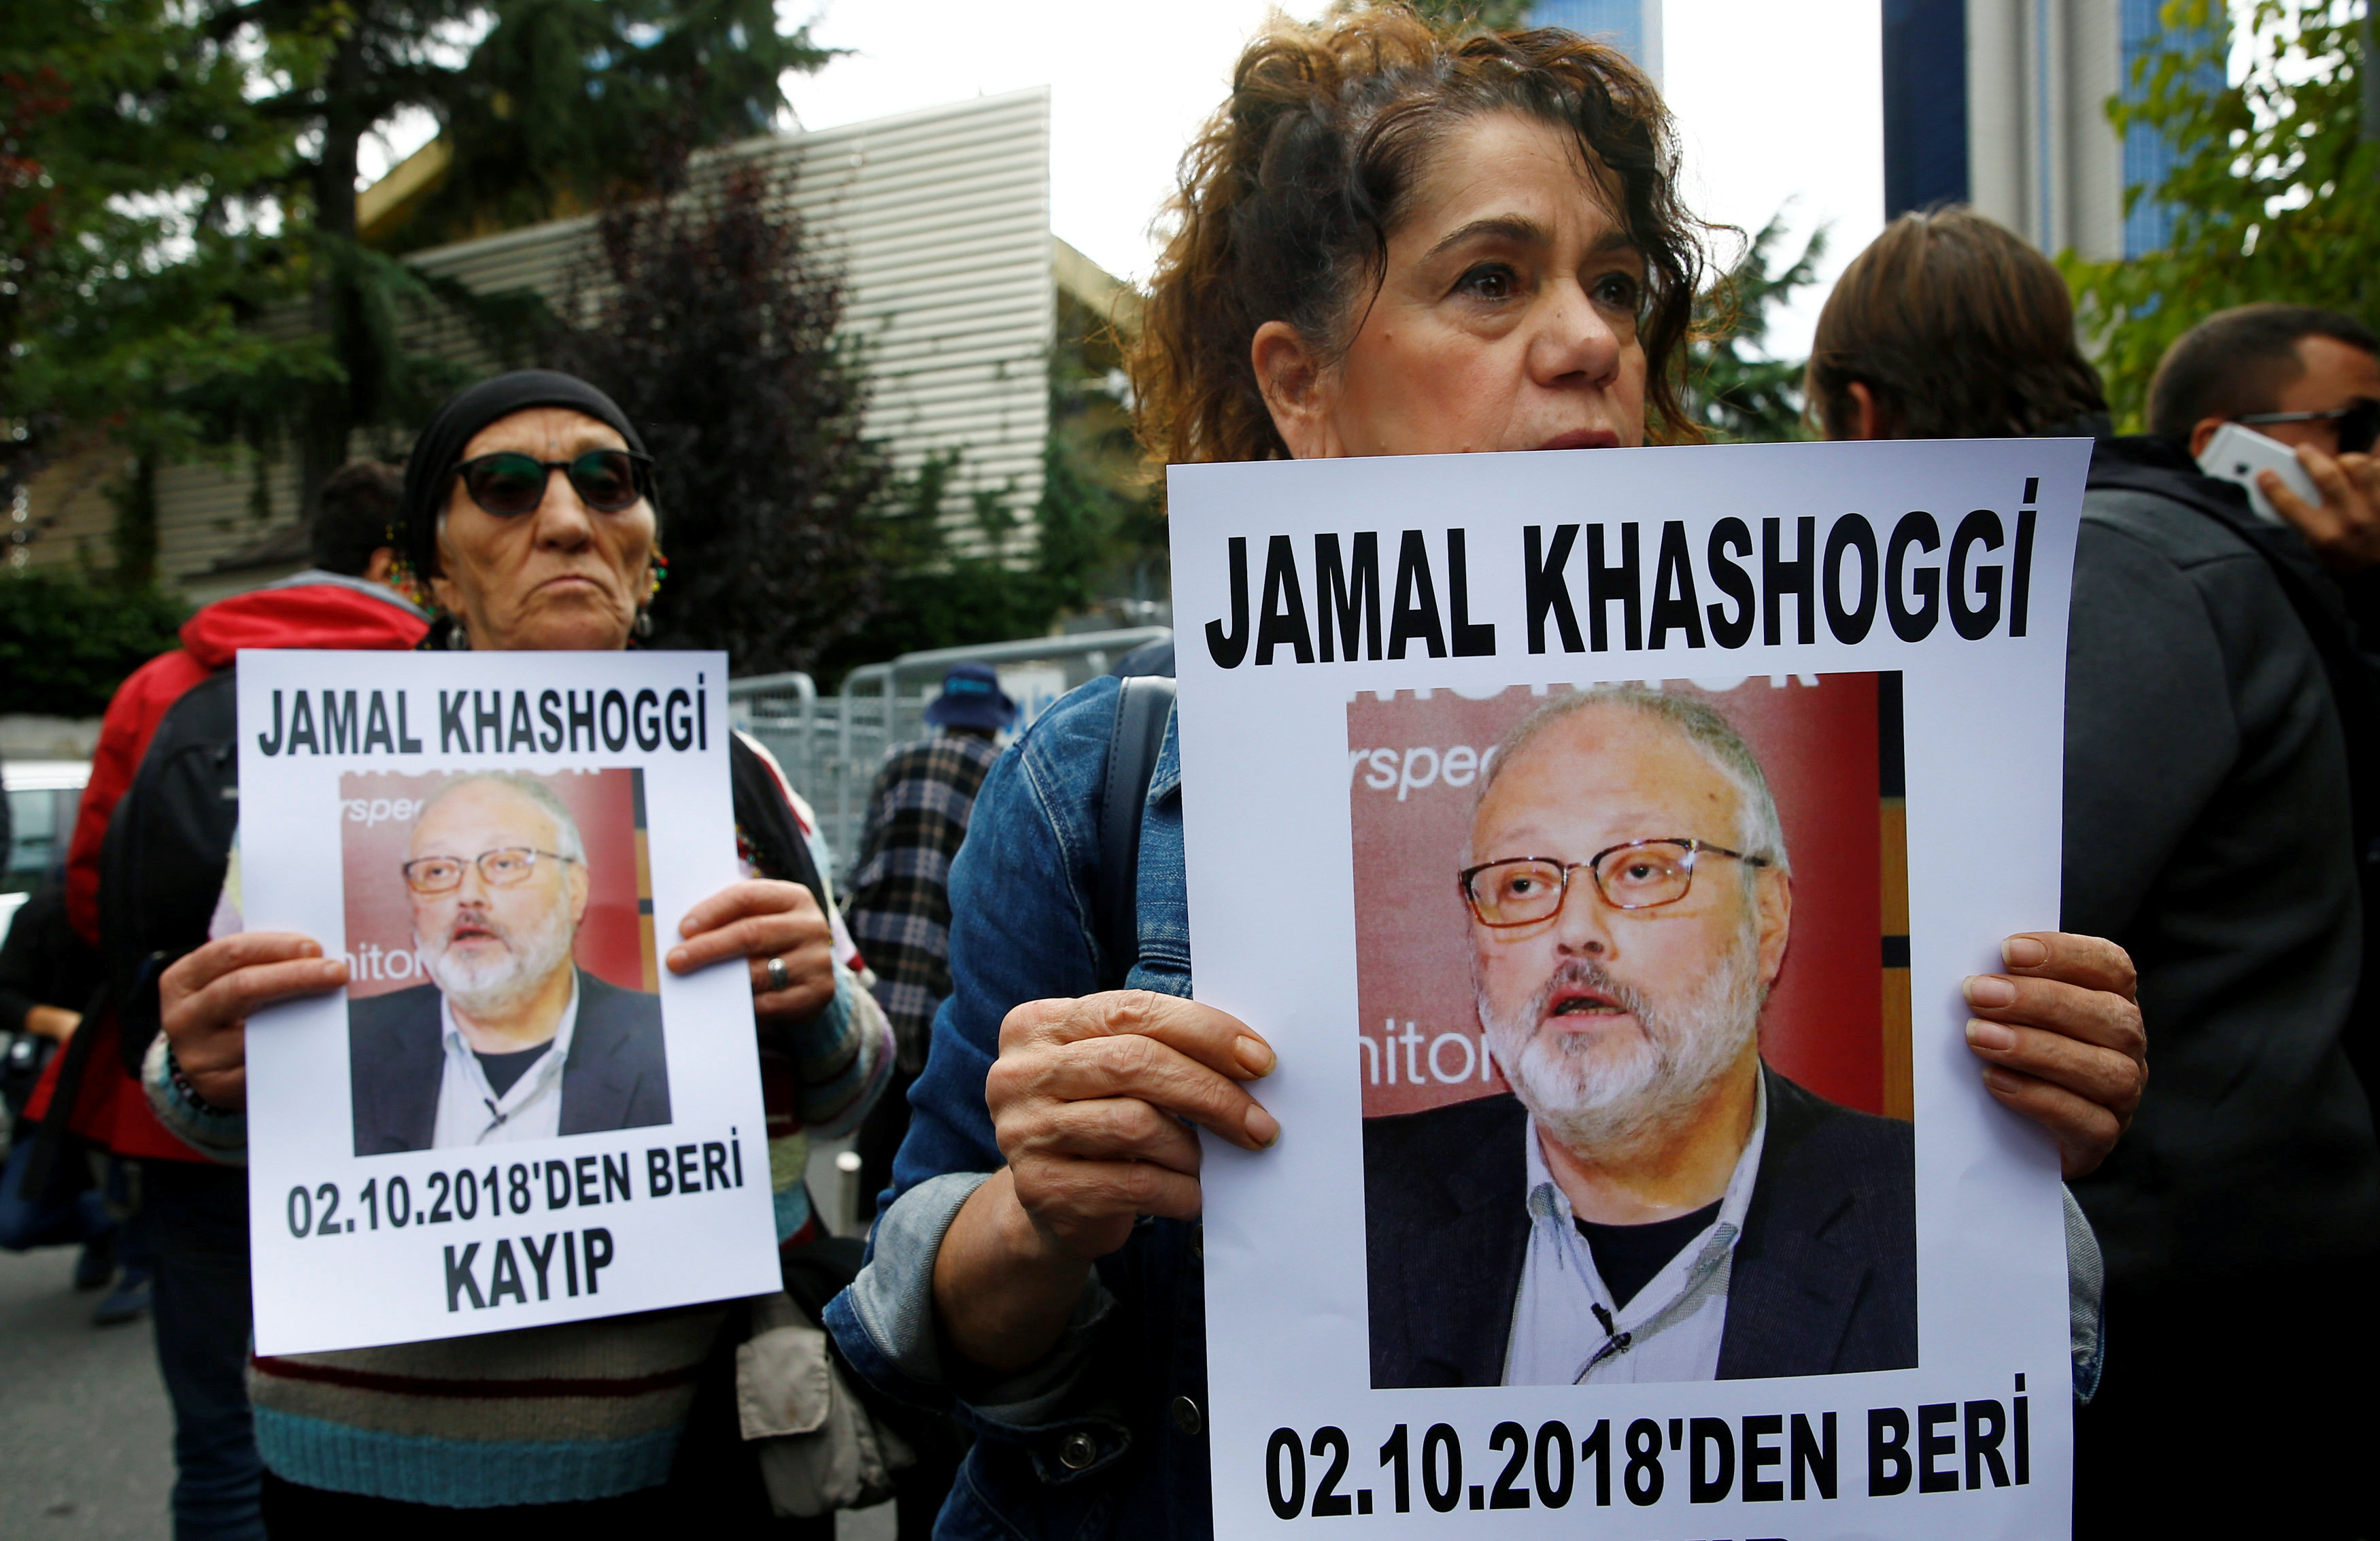 Activistas por los derechos humanos exigen respuestas sobre la desaparición de Jamal Khashoggi frente al consulado saudita en Estambul el 9 de octubre (REUTERS/Osman Orsal)